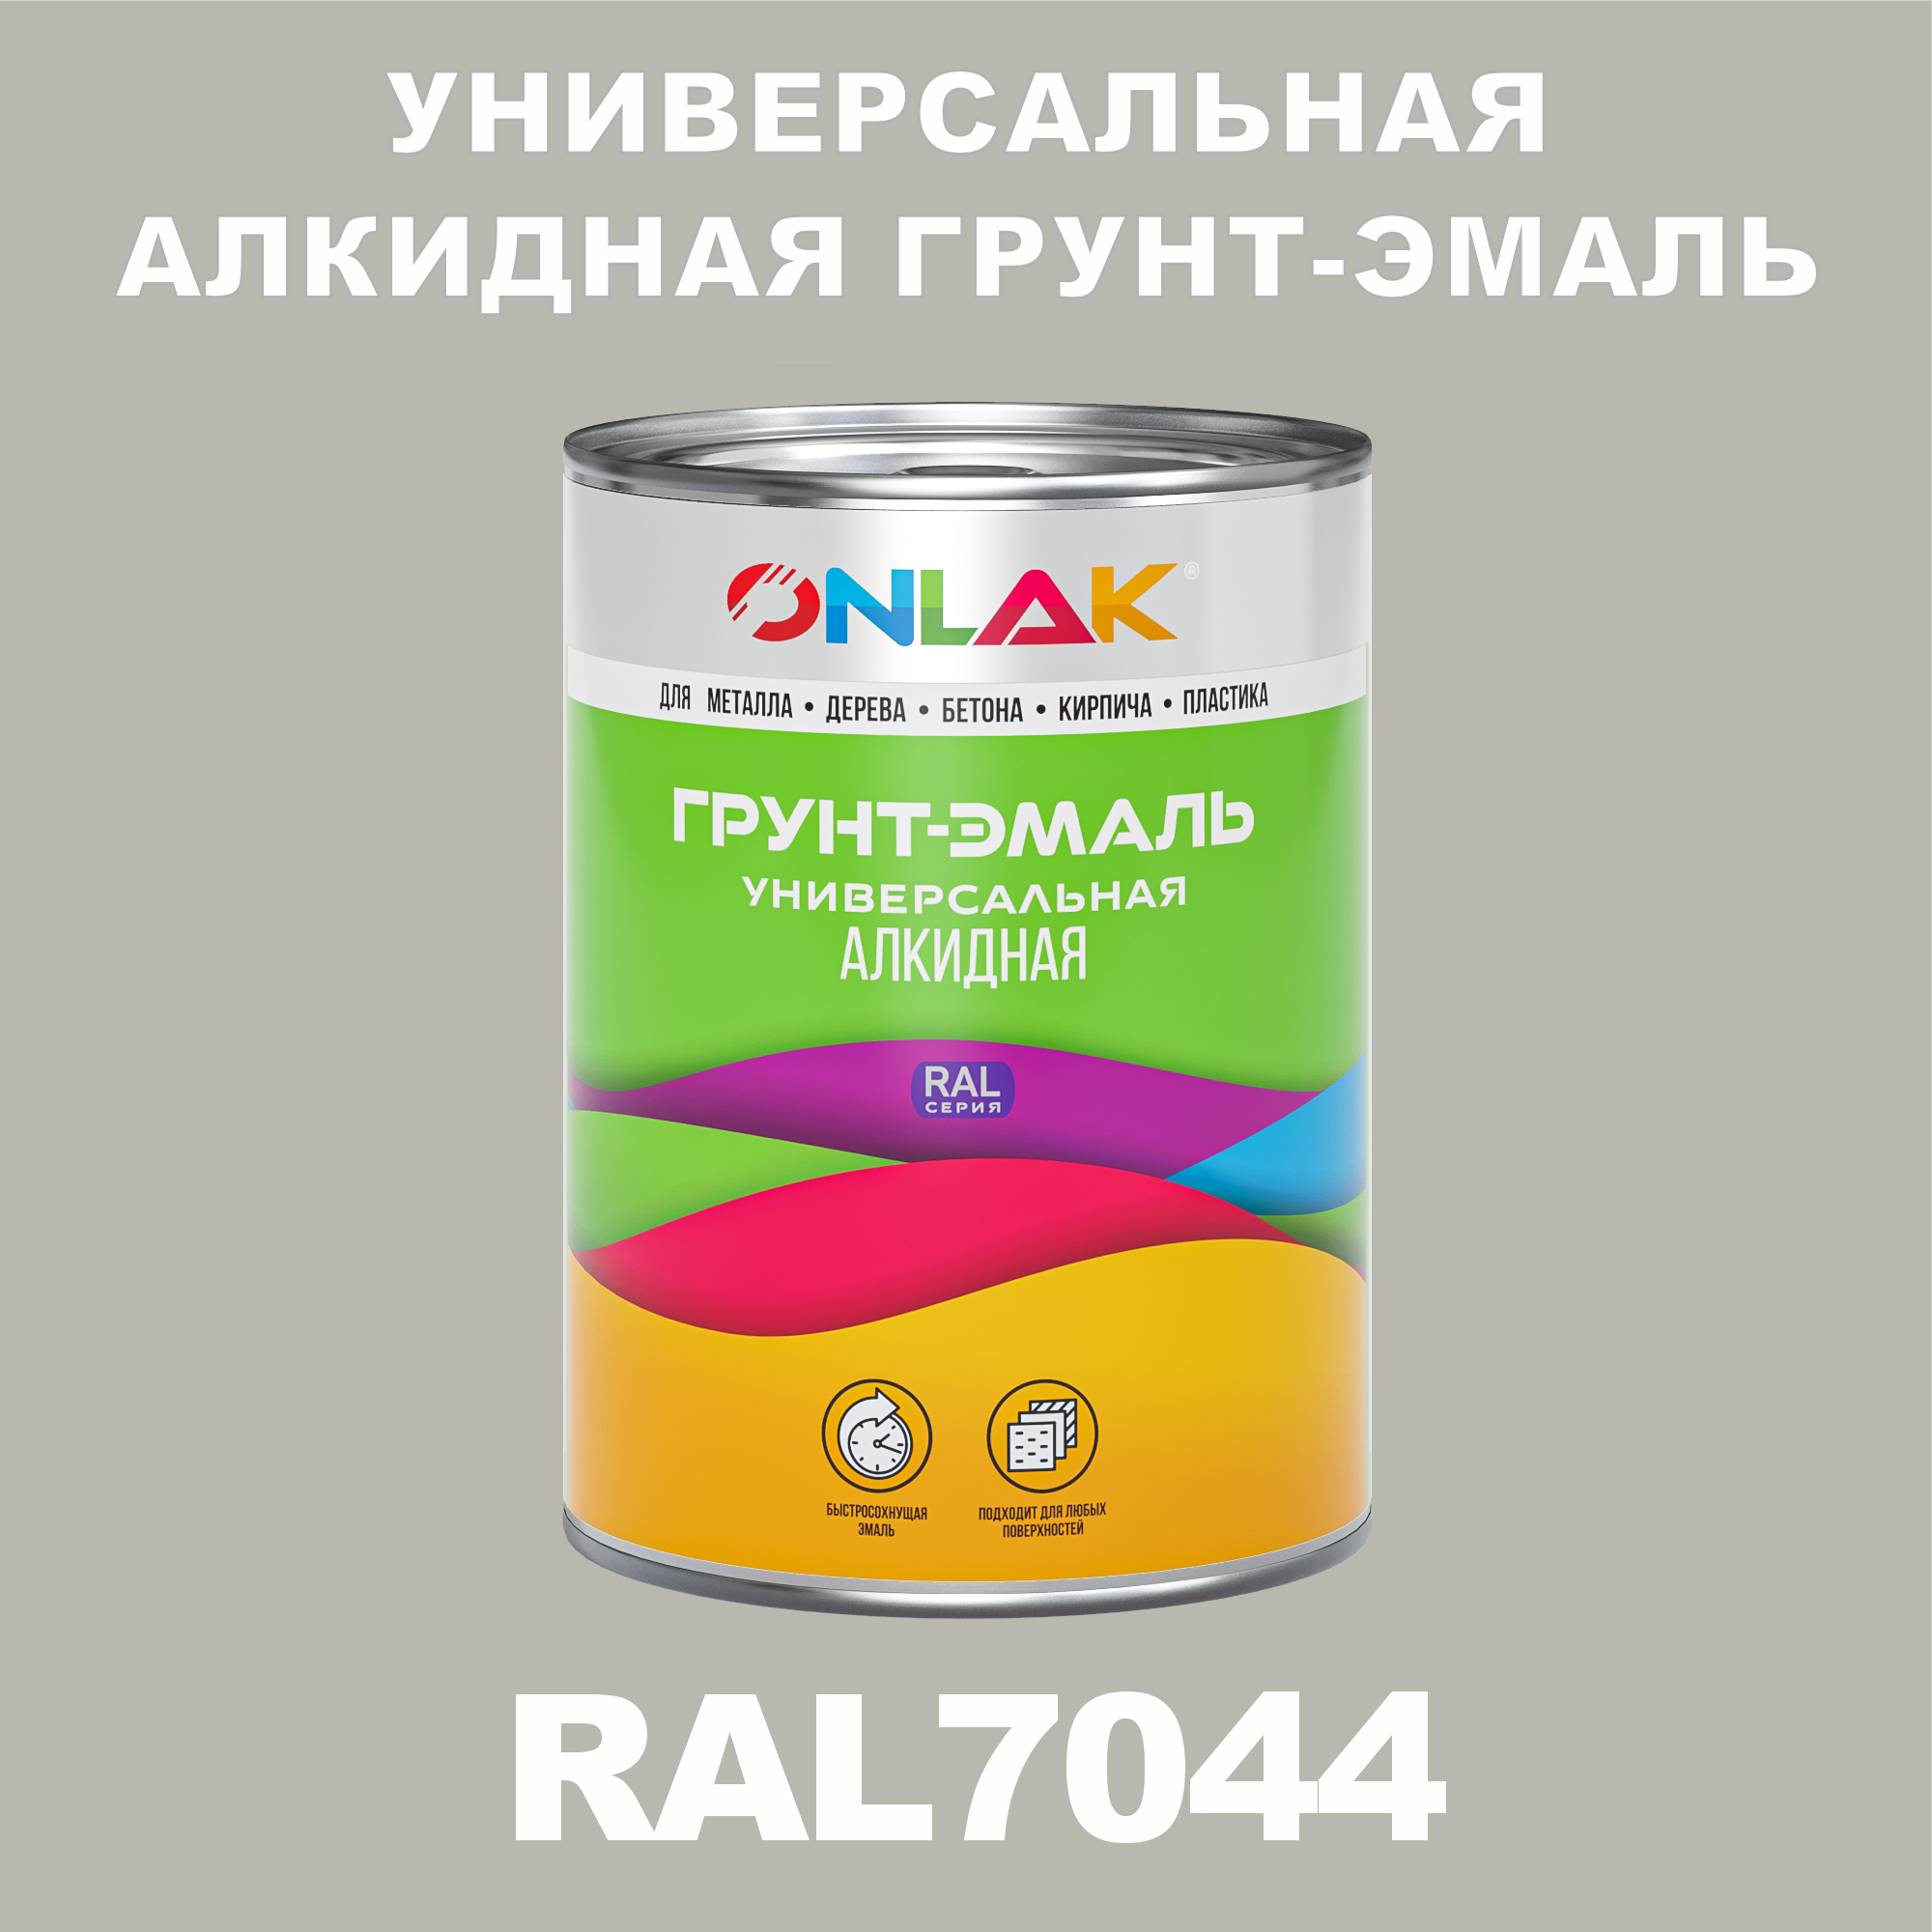 Грунт-эмаль ONLAK 1К RAL7044 антикоррозионная алкидная по металлу по ржавчине 1 кг грунт эмаль neomid по ржавчине быстросохнущая алкидная серая 0 9 кг